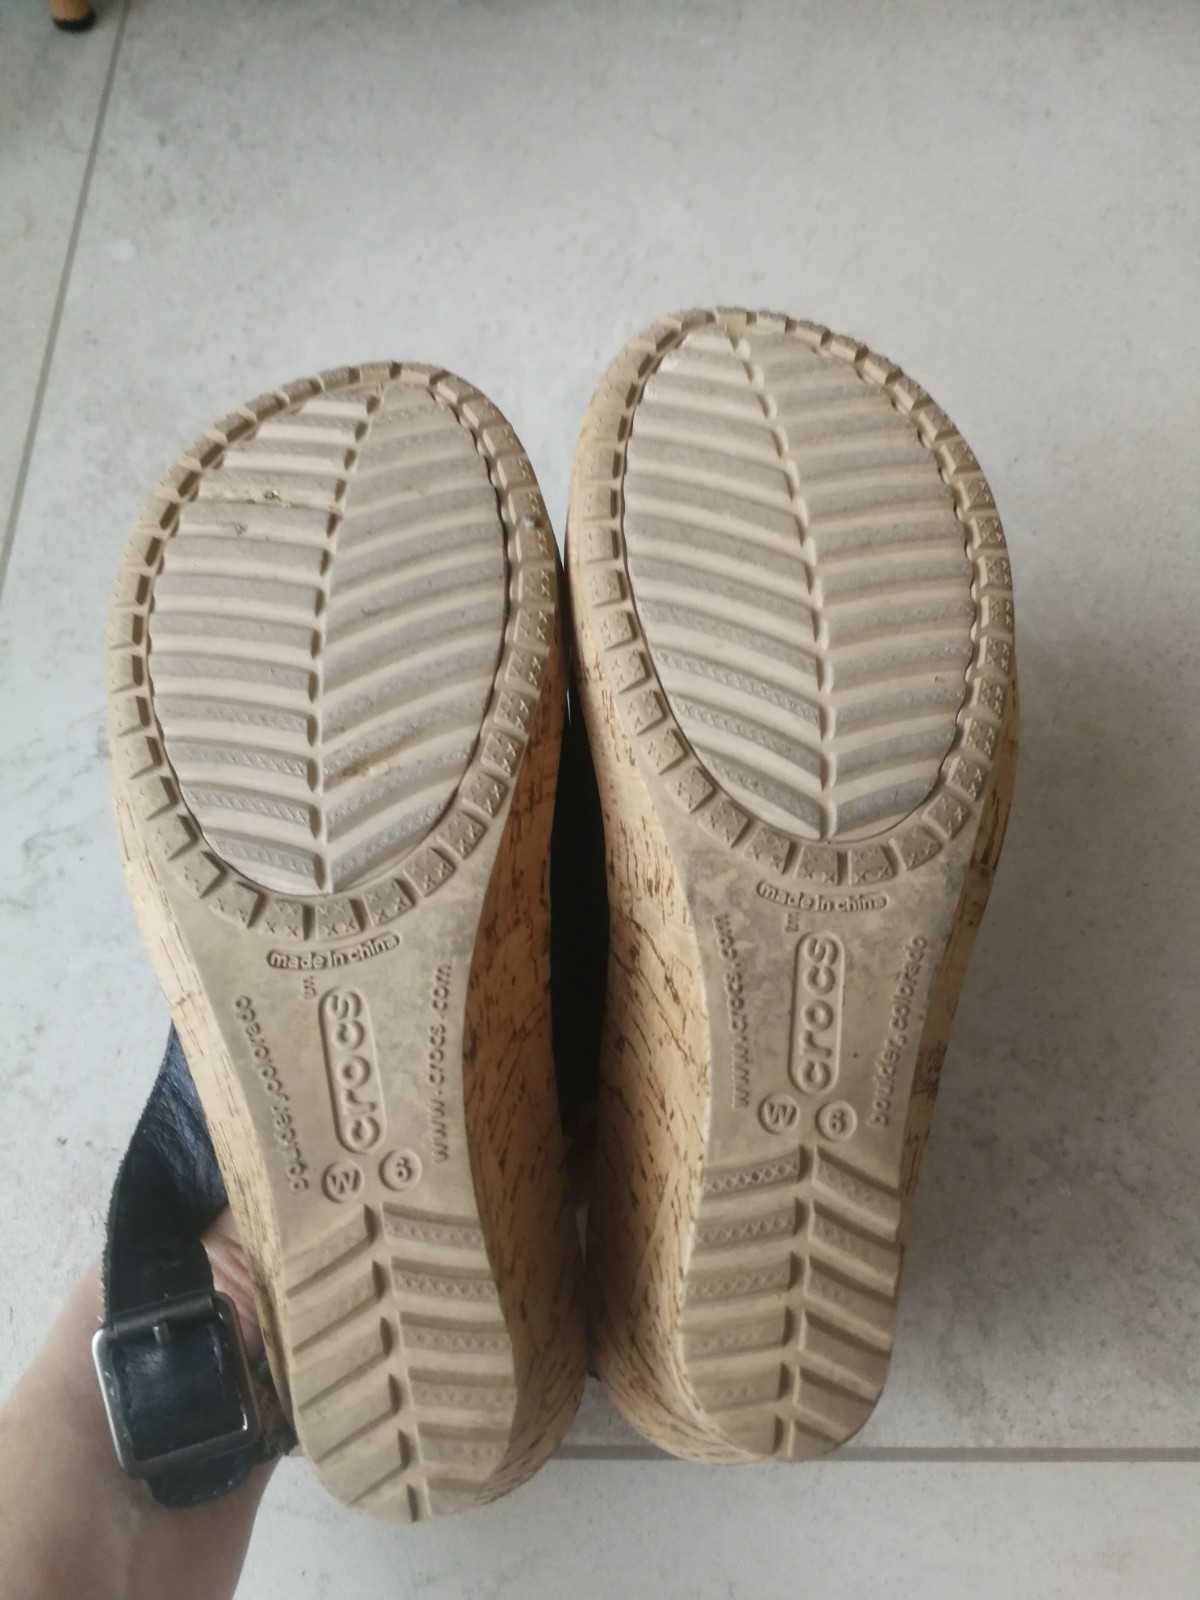 Orygialne buty Crocs sandały na koturnie rozmiar 6 - 39